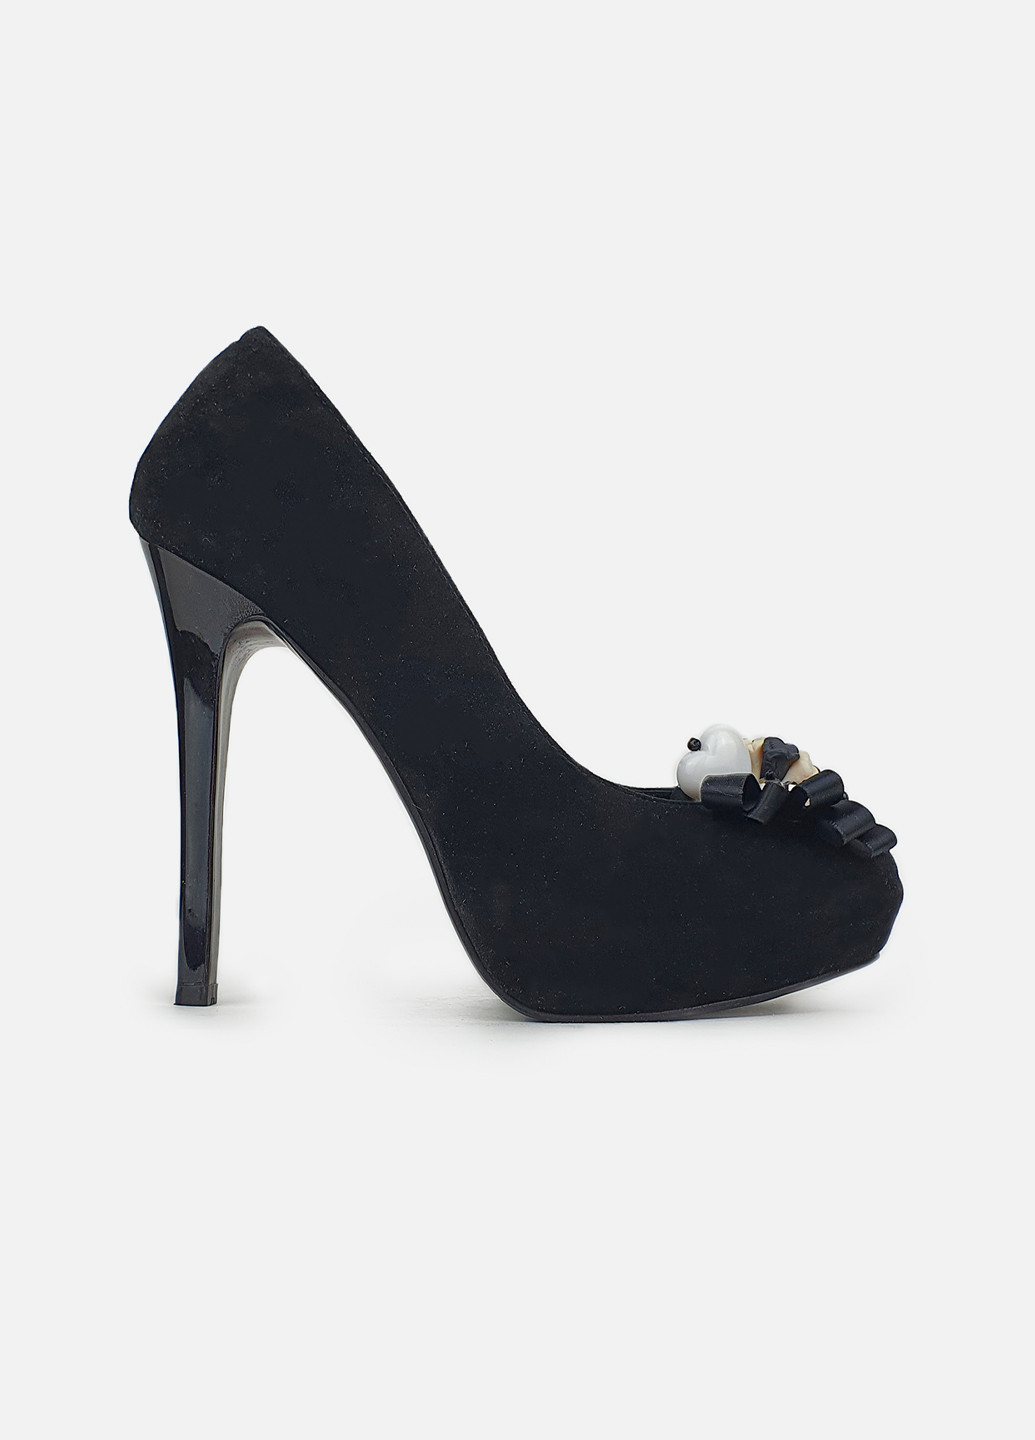 Черные замшевые туфли женские на высоком каблуке Basconi